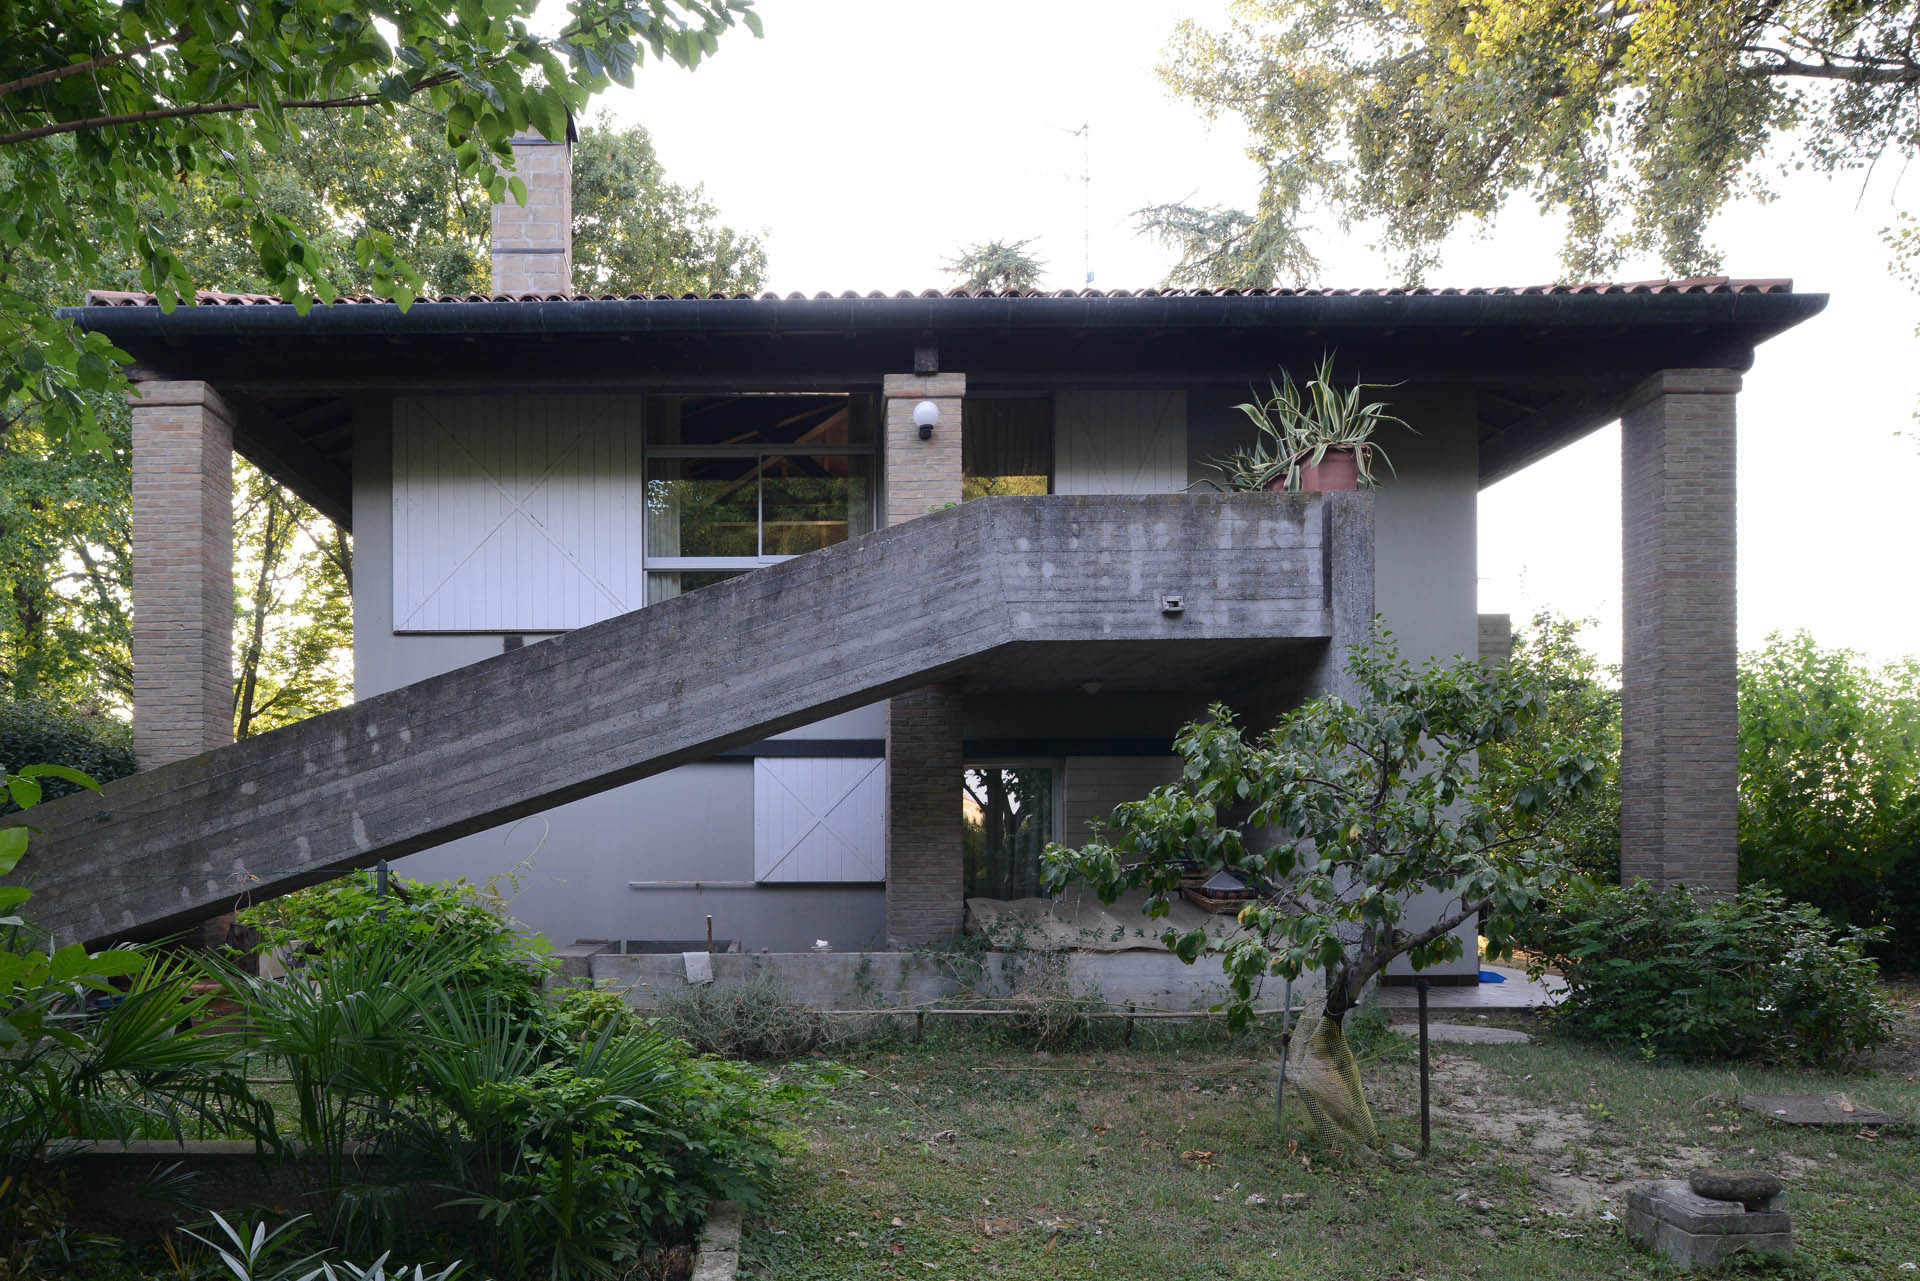 02 Studio Bacchi architetti associati Villa in campagna img 02